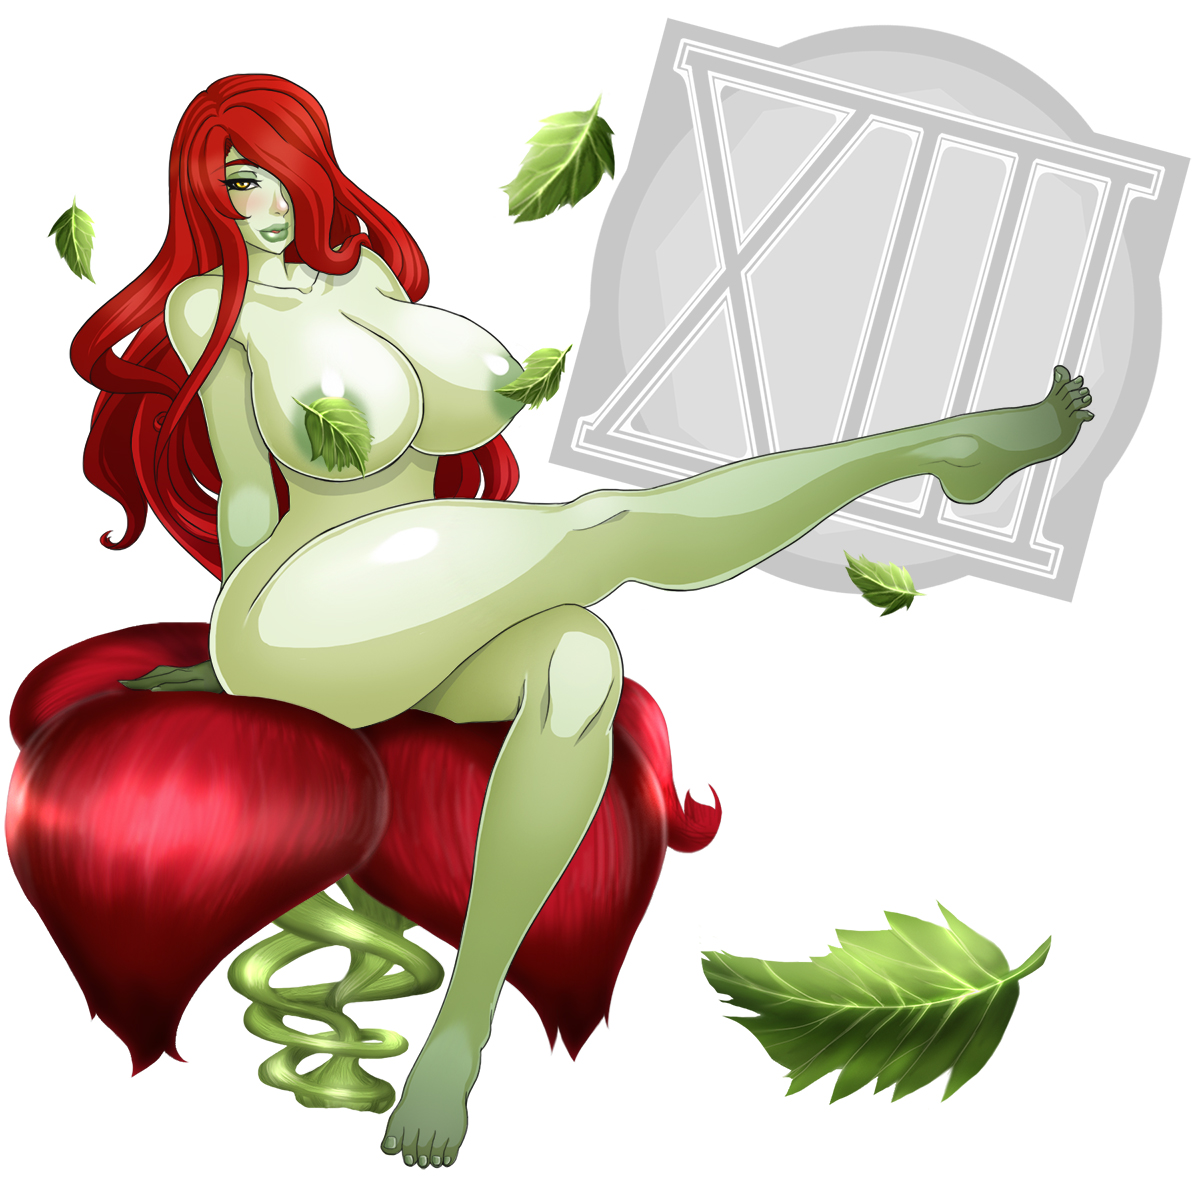 Poison ivy's boobs